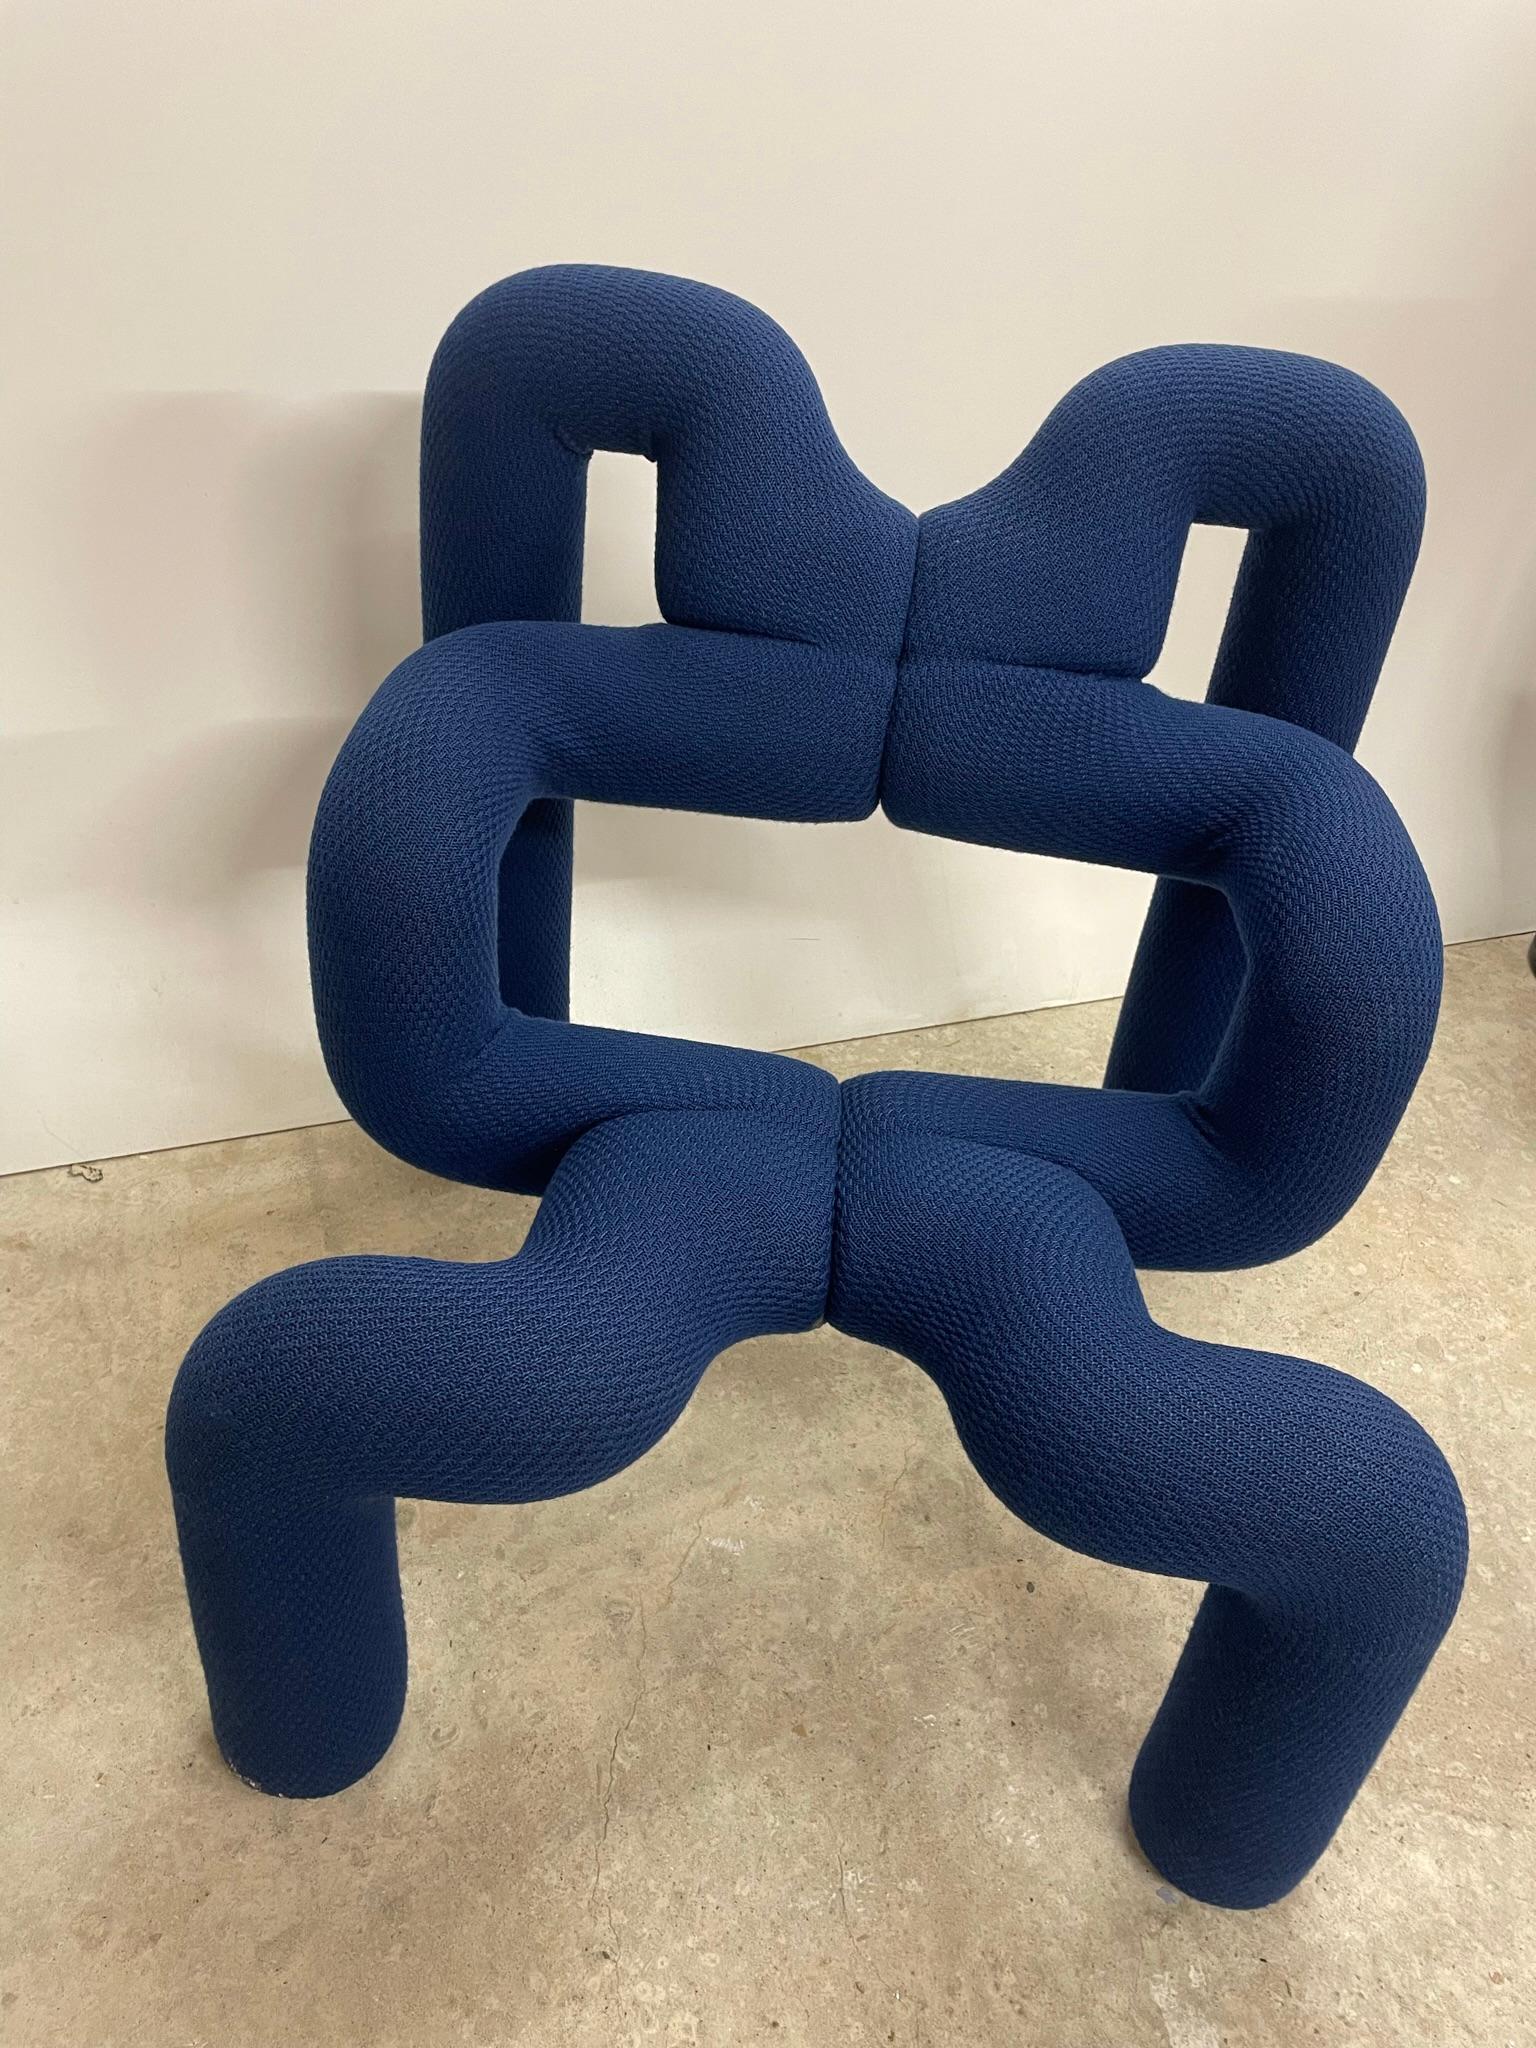 Ein Kunstwerk getarnt als Sessel! 

Dieser Loungesessel, der auch als Extreme Chair bekannt ist, kommt direkt aus Norwegen. Dieser abstrakte Entwurf stammte von Terje Ekstrom für Stokke Varier. Mit seiner ergonomischen Sitzfläche lädt er ein zum